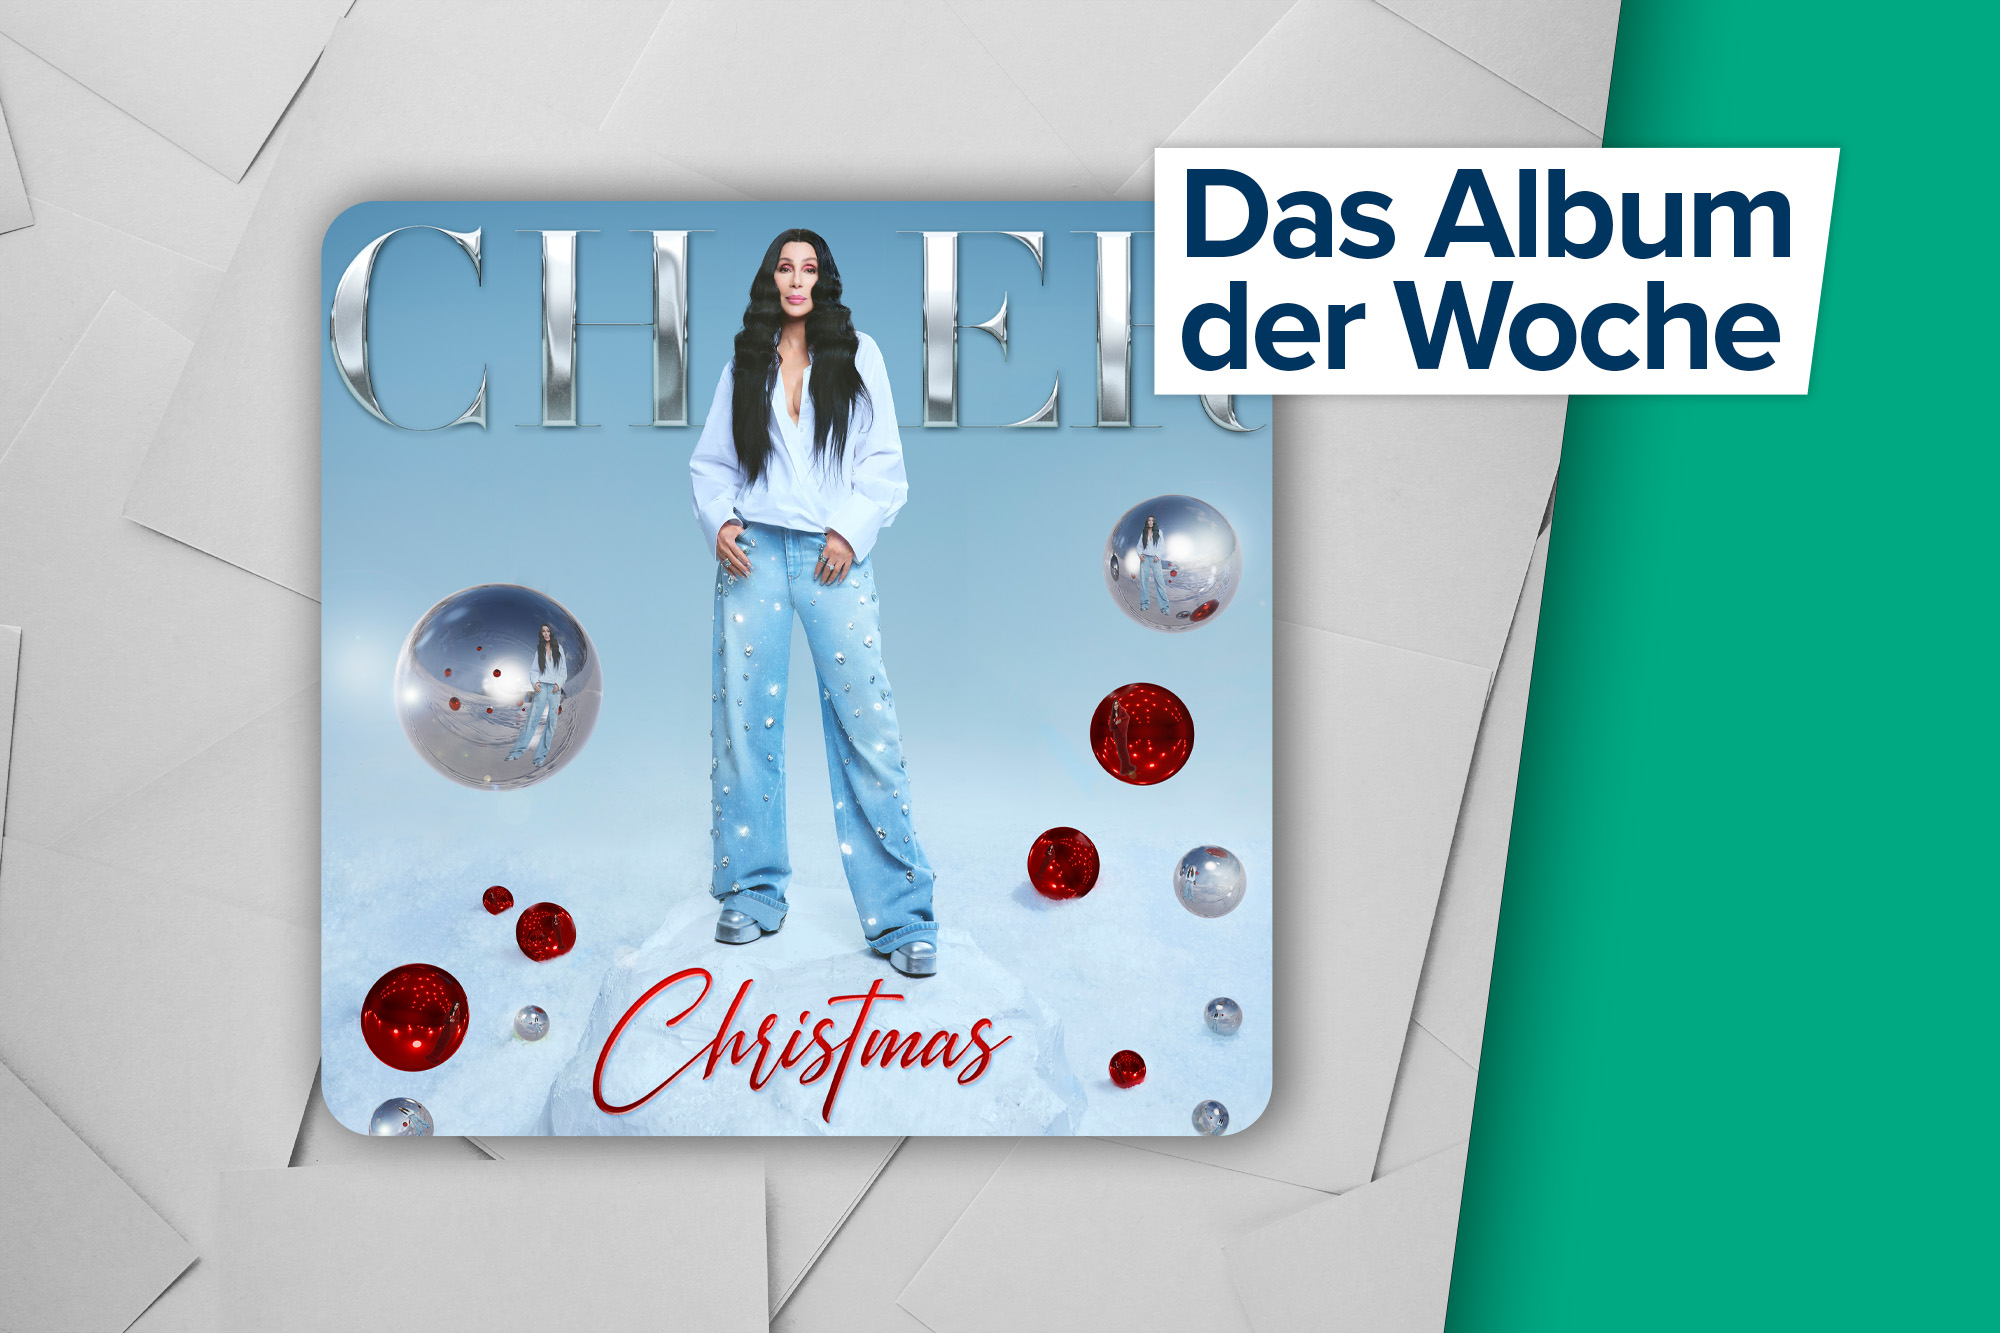 Das Album der Woche: "Christmas" von Cher (Warner Music)